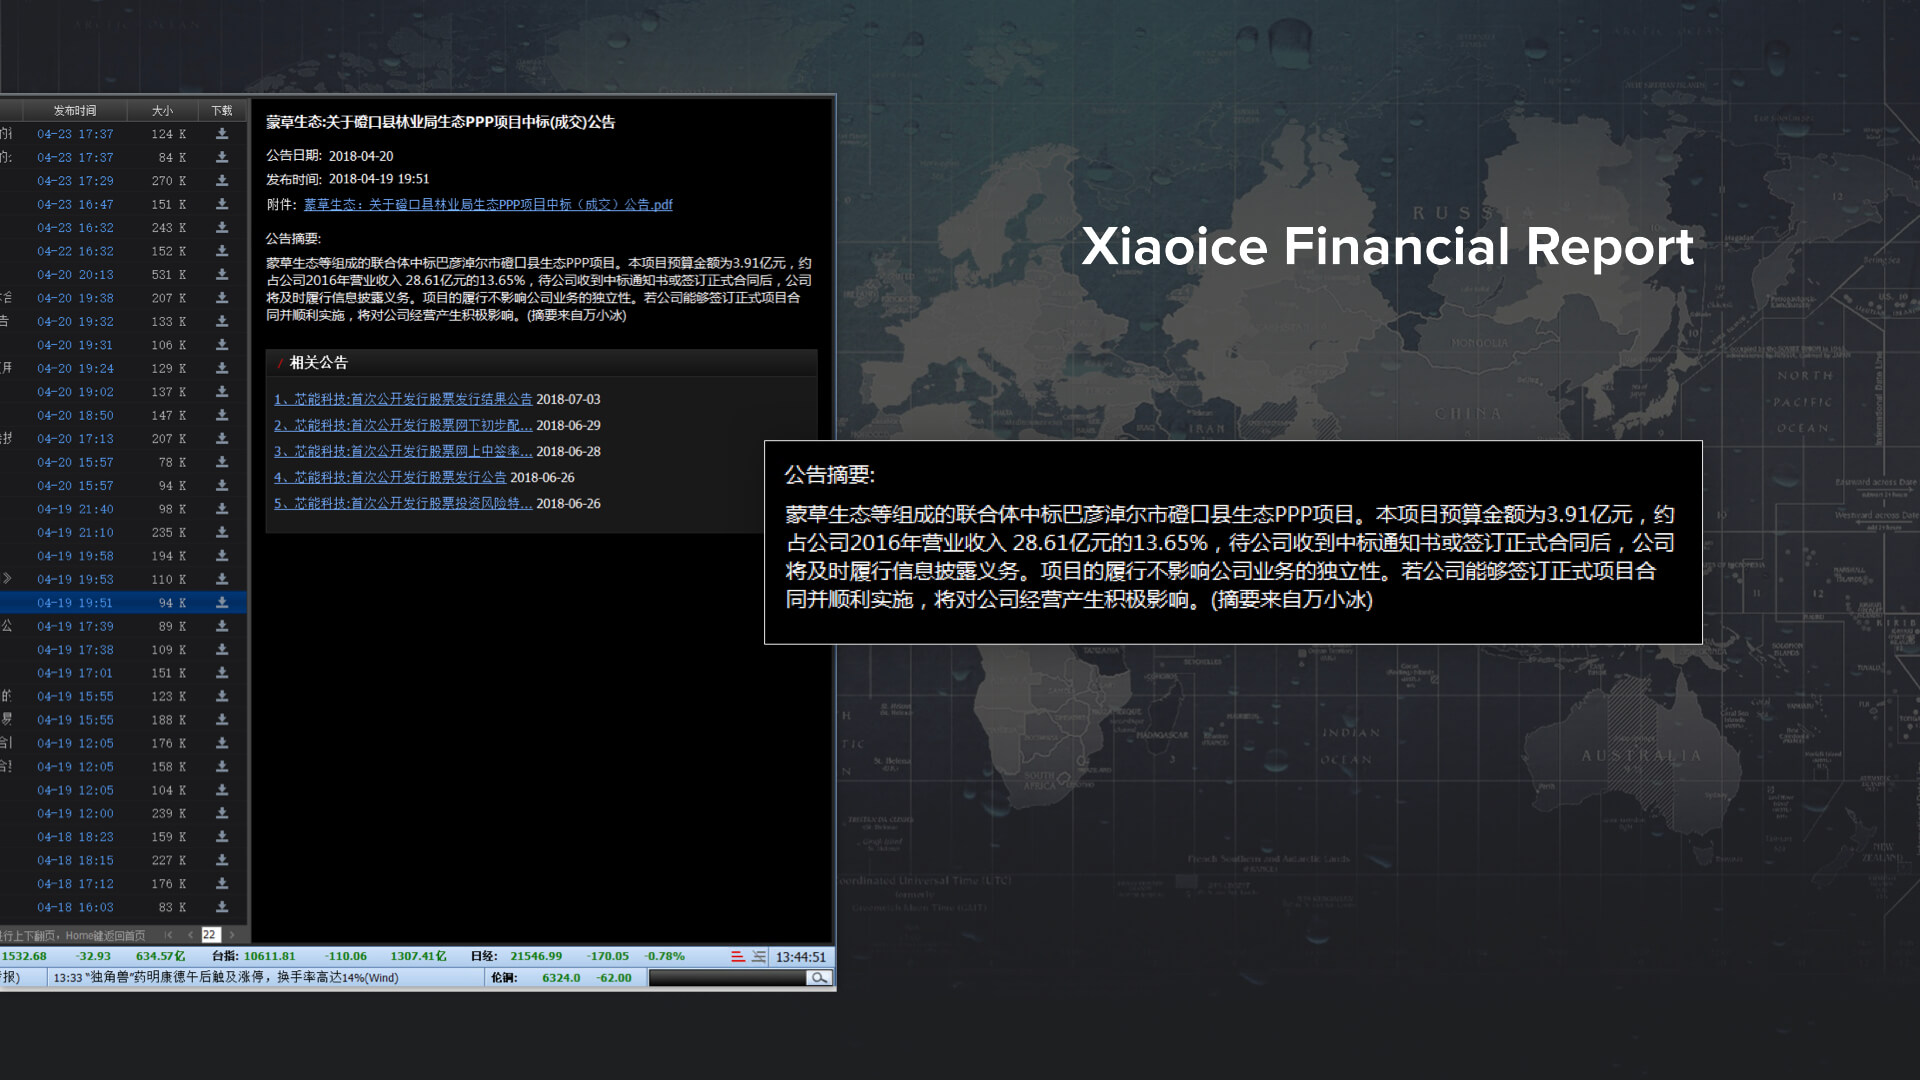 Xiaoice financial reports